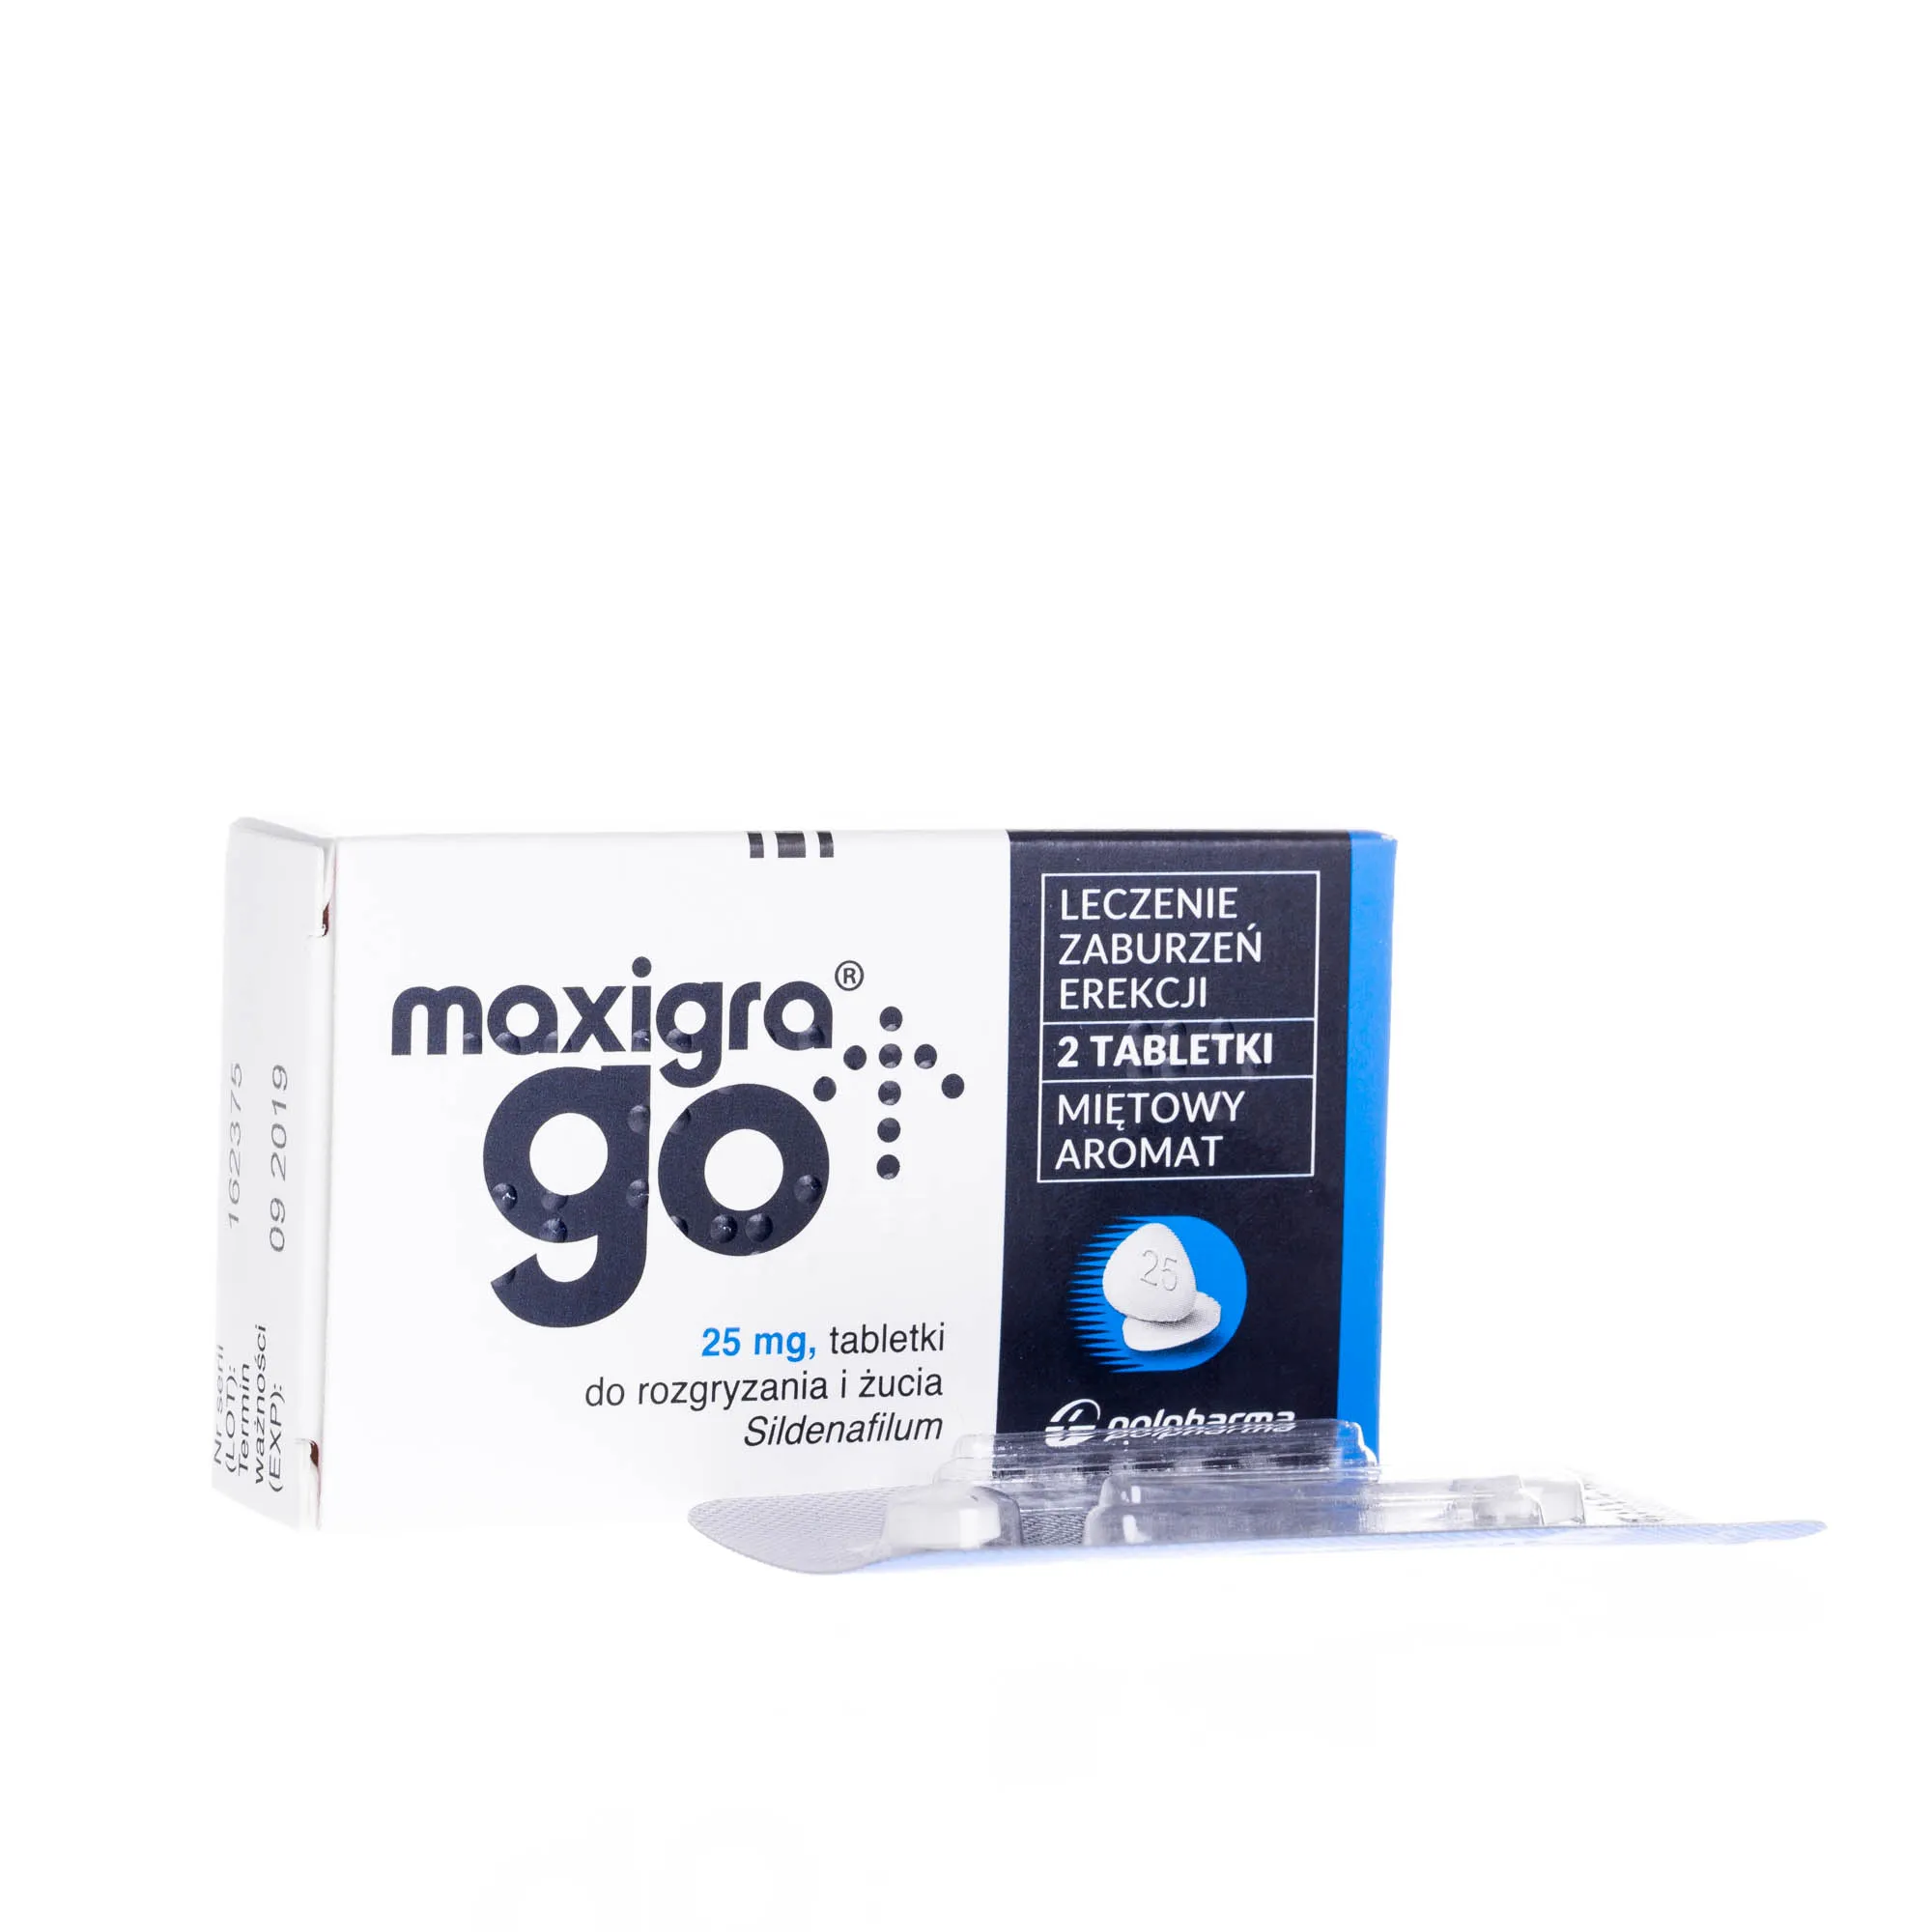 Maxigra Go - lek stosowany w leczeniu zaburzeń erekcji, 2 tabletki 